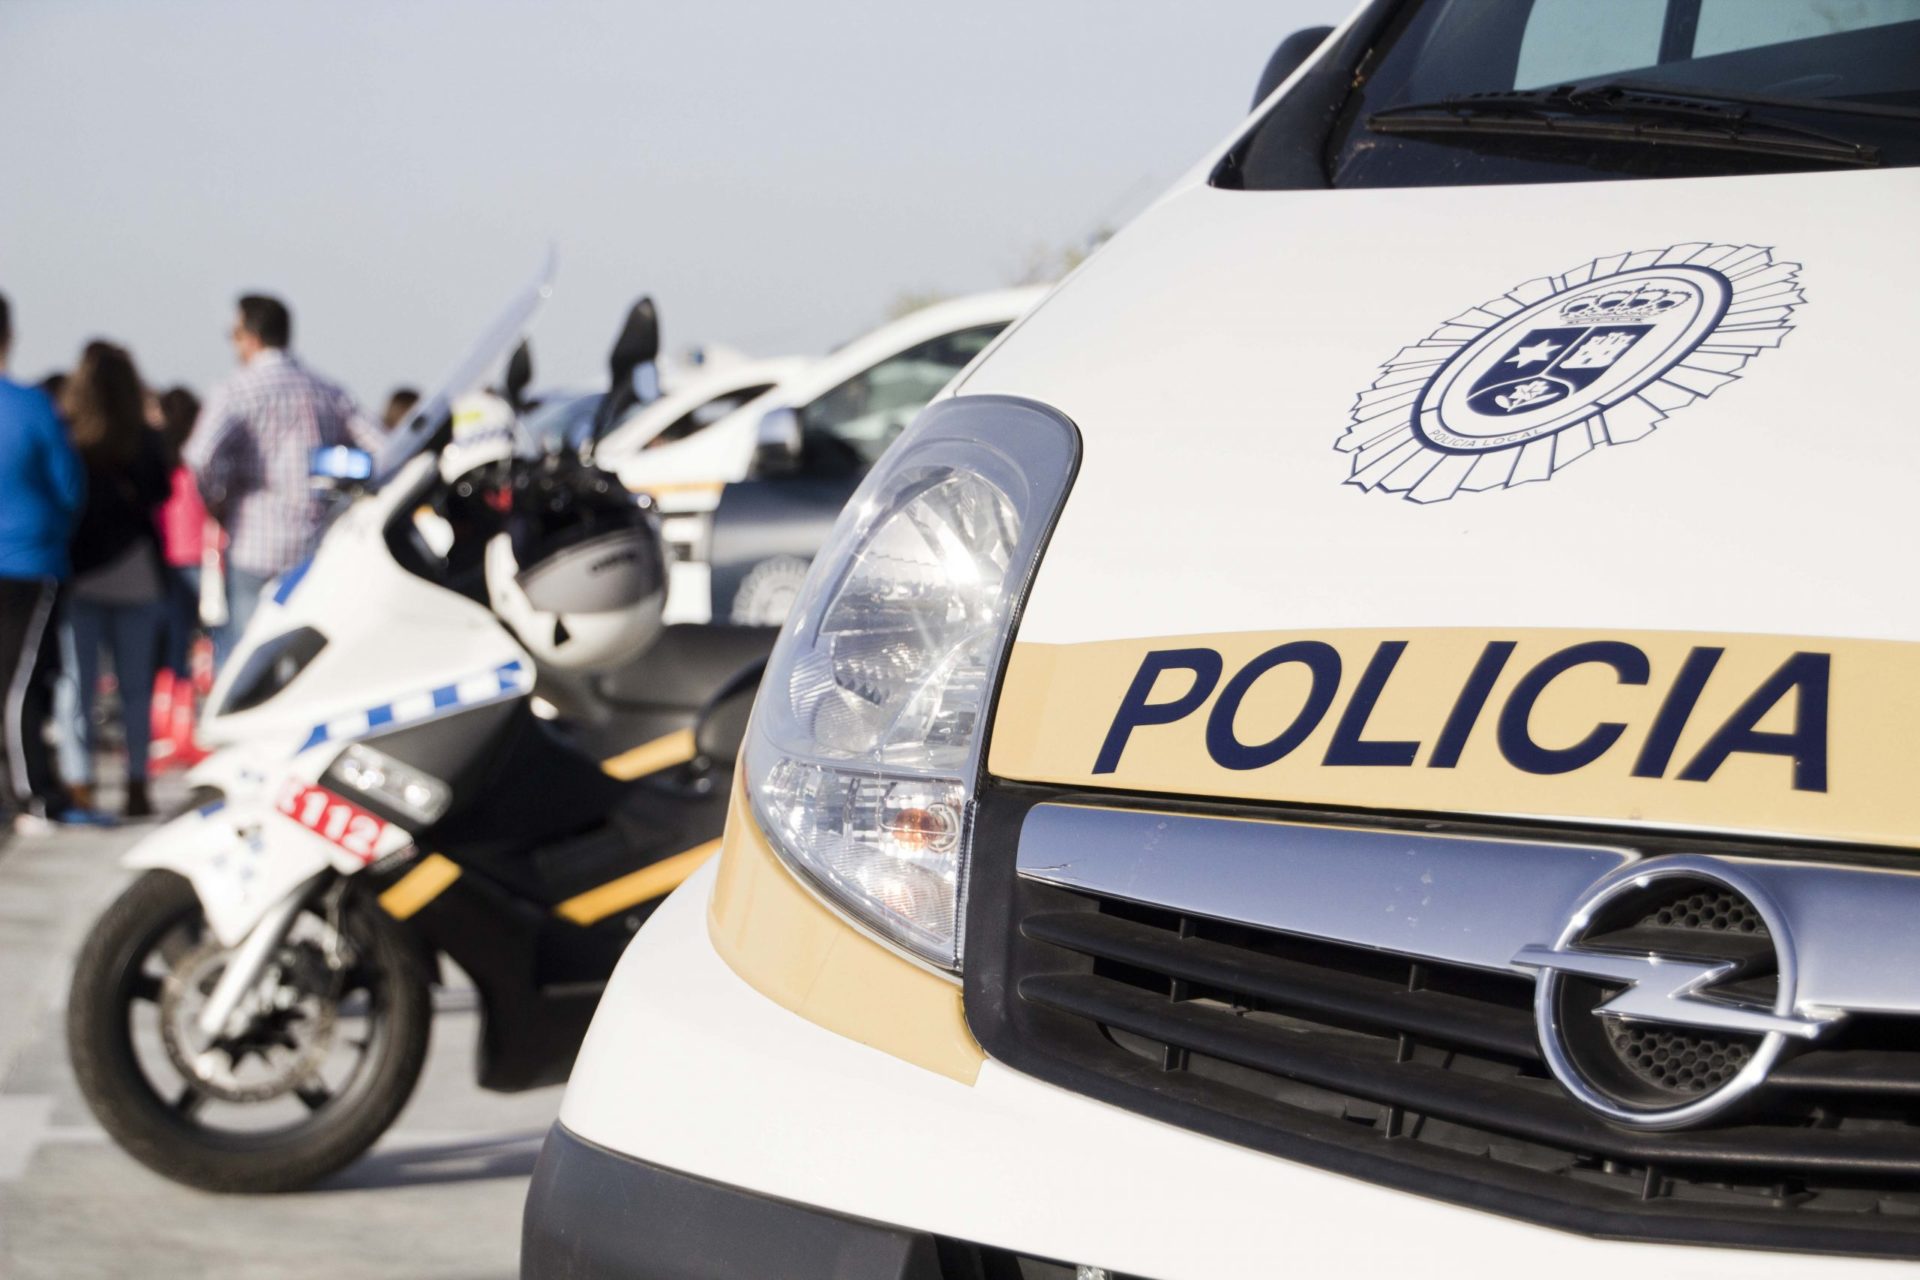 La Policía Local informa a los conductores de alternativas y restricciones de cara a la mañana de este viernes 1